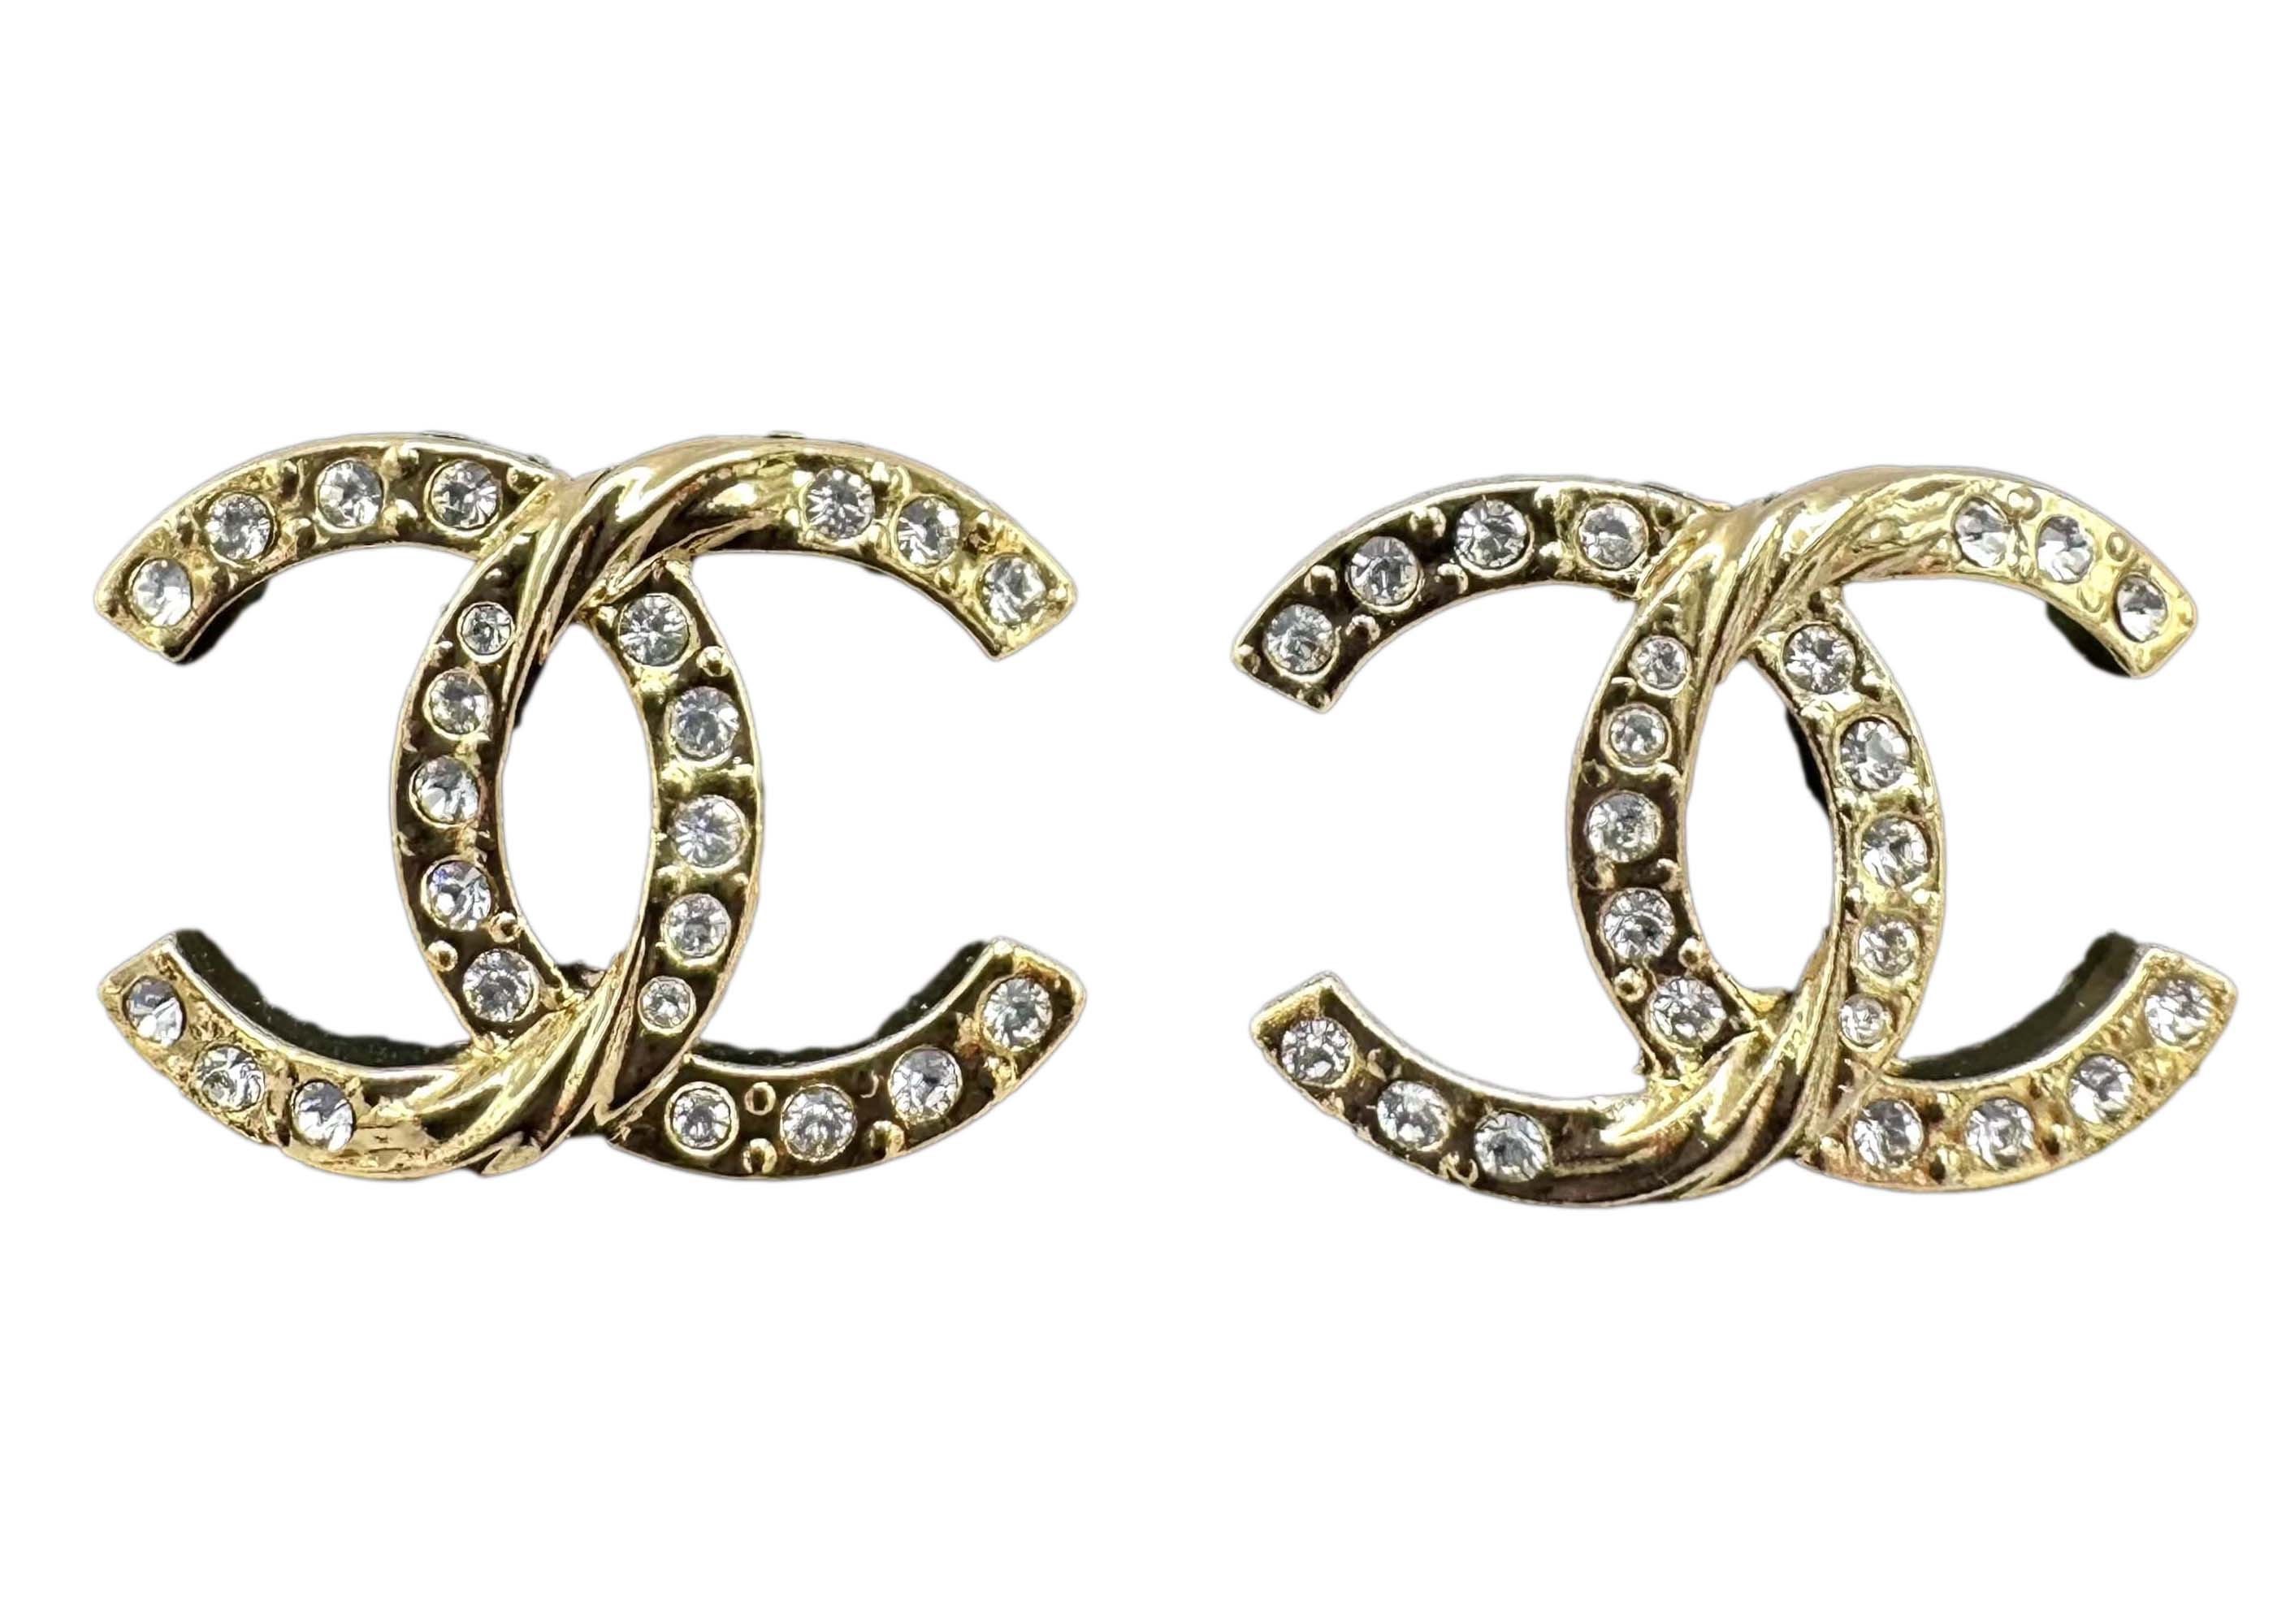 Chanel 2020 CC Crystal Stud Earrings  idusemiduedutr